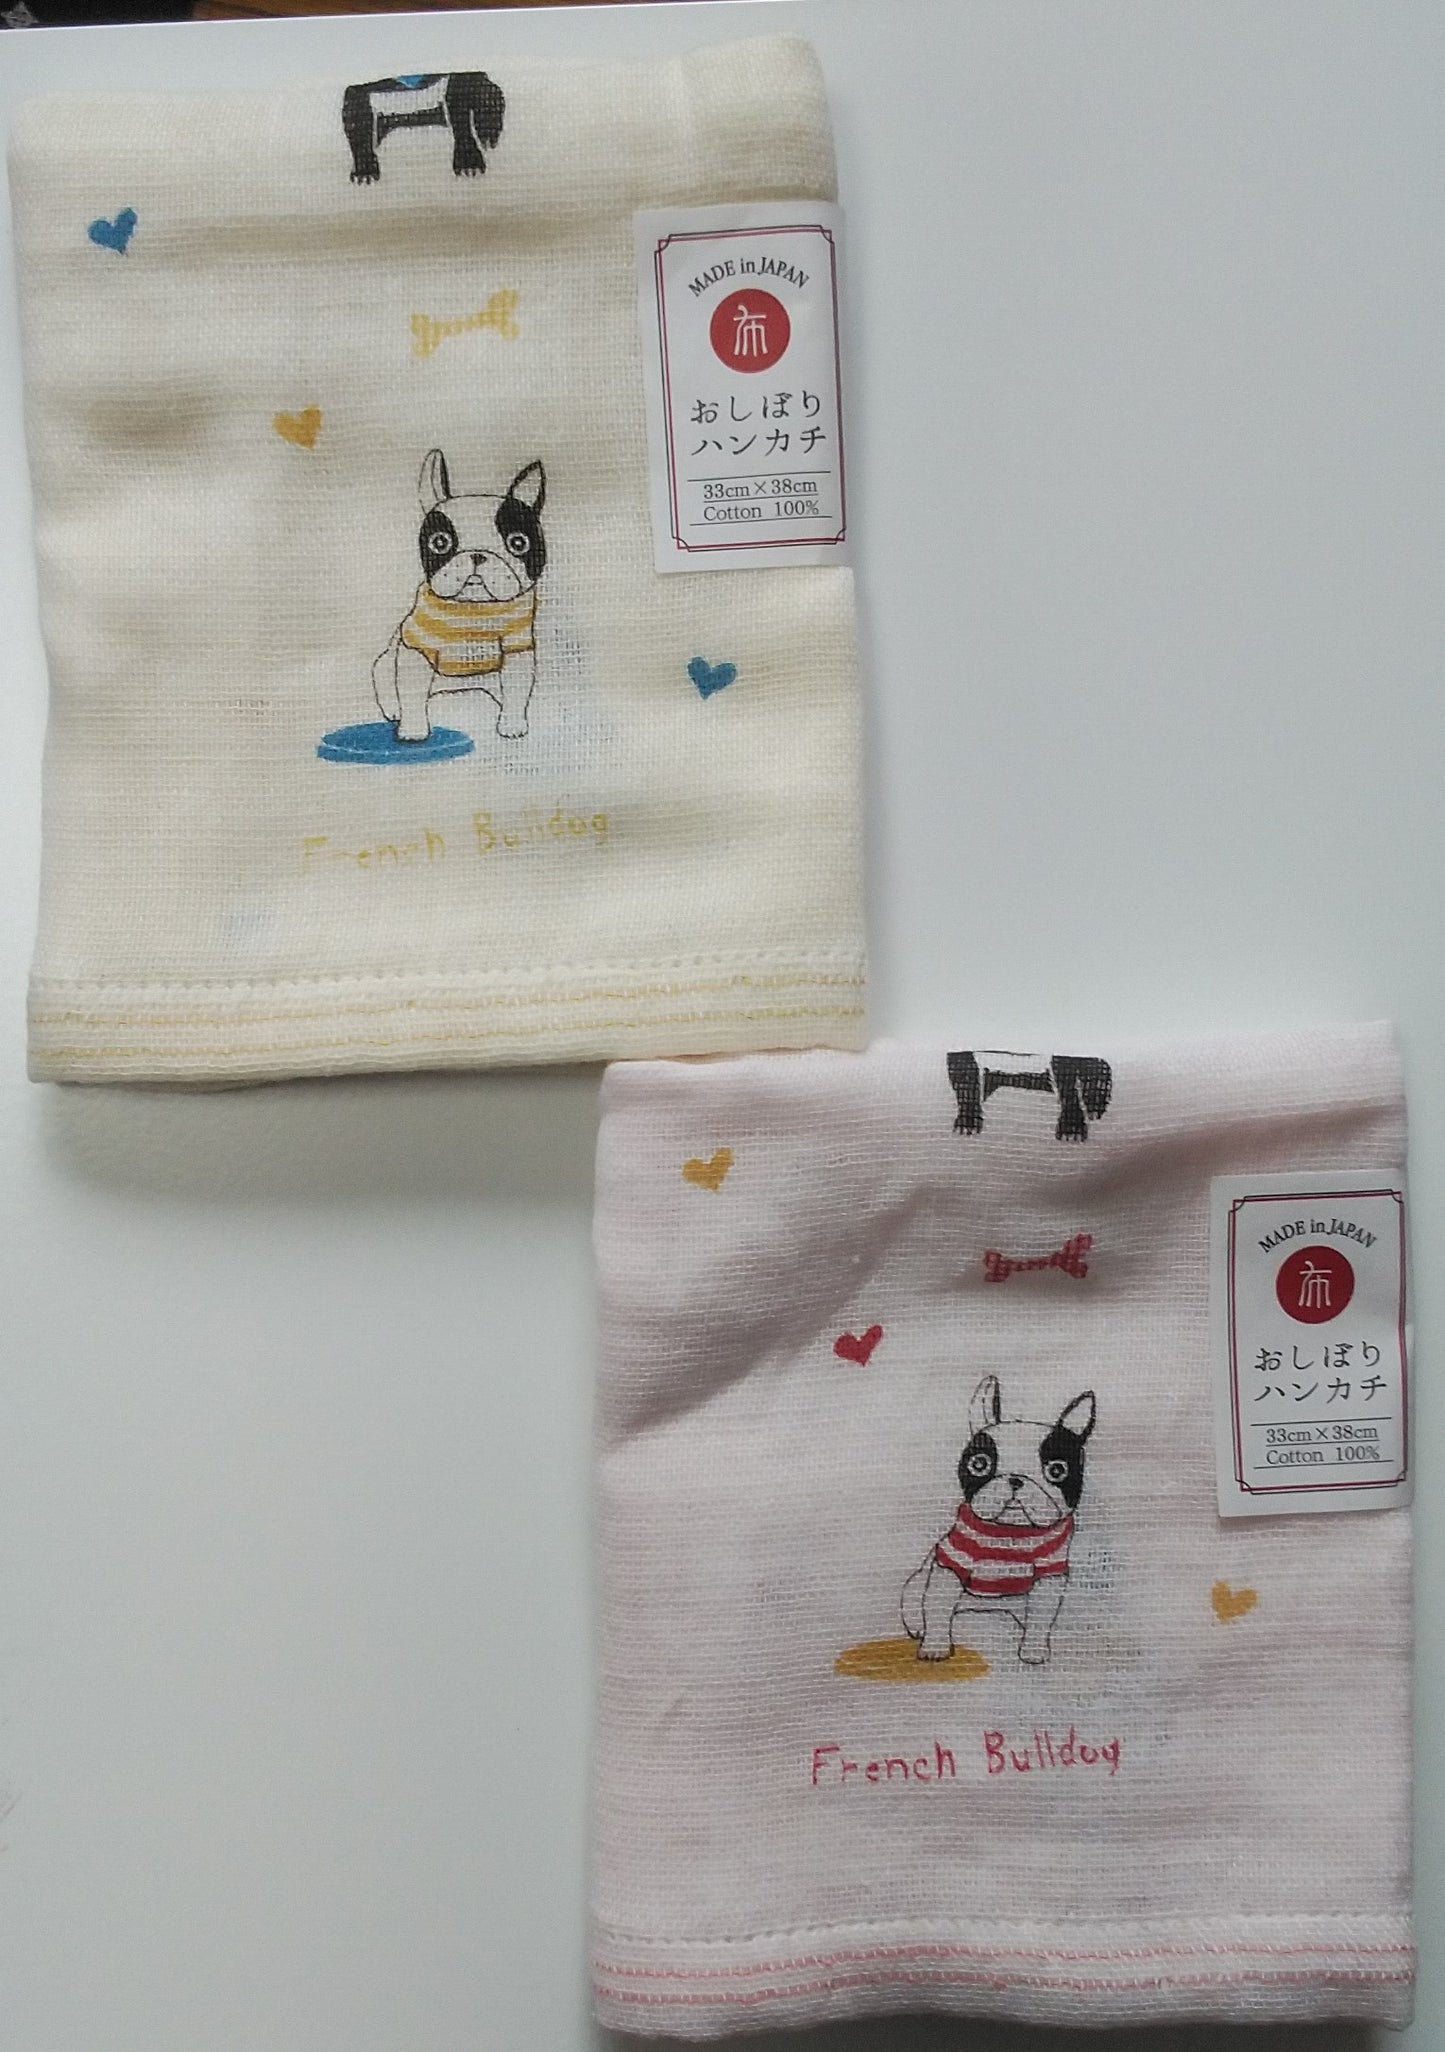 French bulldog gauze towel and handkerchief from Imabari